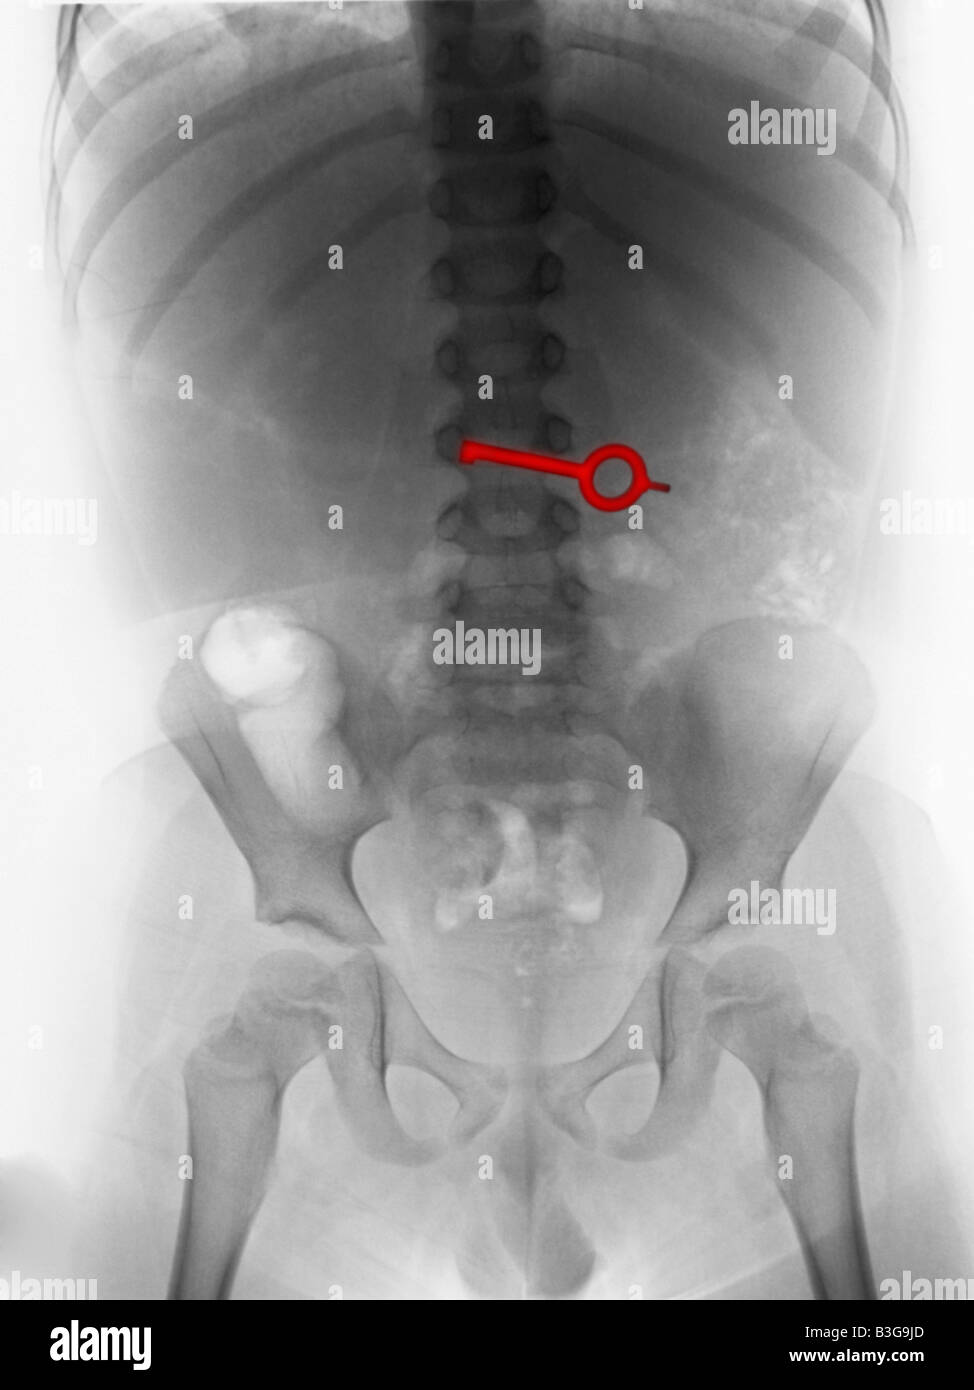 Radiografía del abdomen de un joven que ingirió una clave Foto de stock